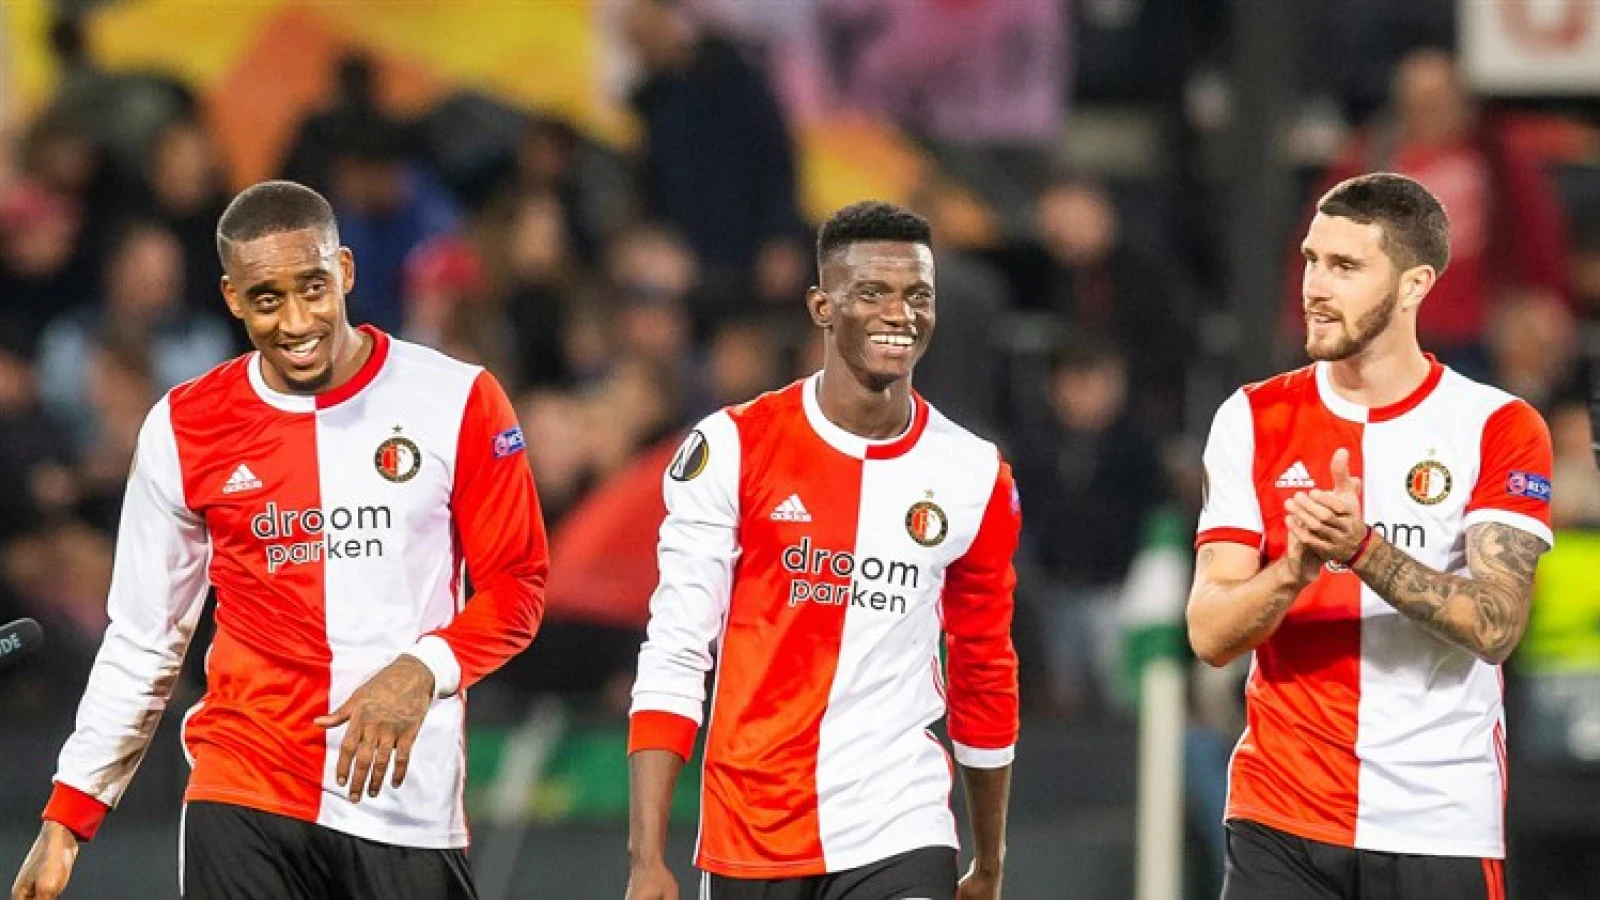 VI | 'Feyenoord wil verdediger jaar langer huren'